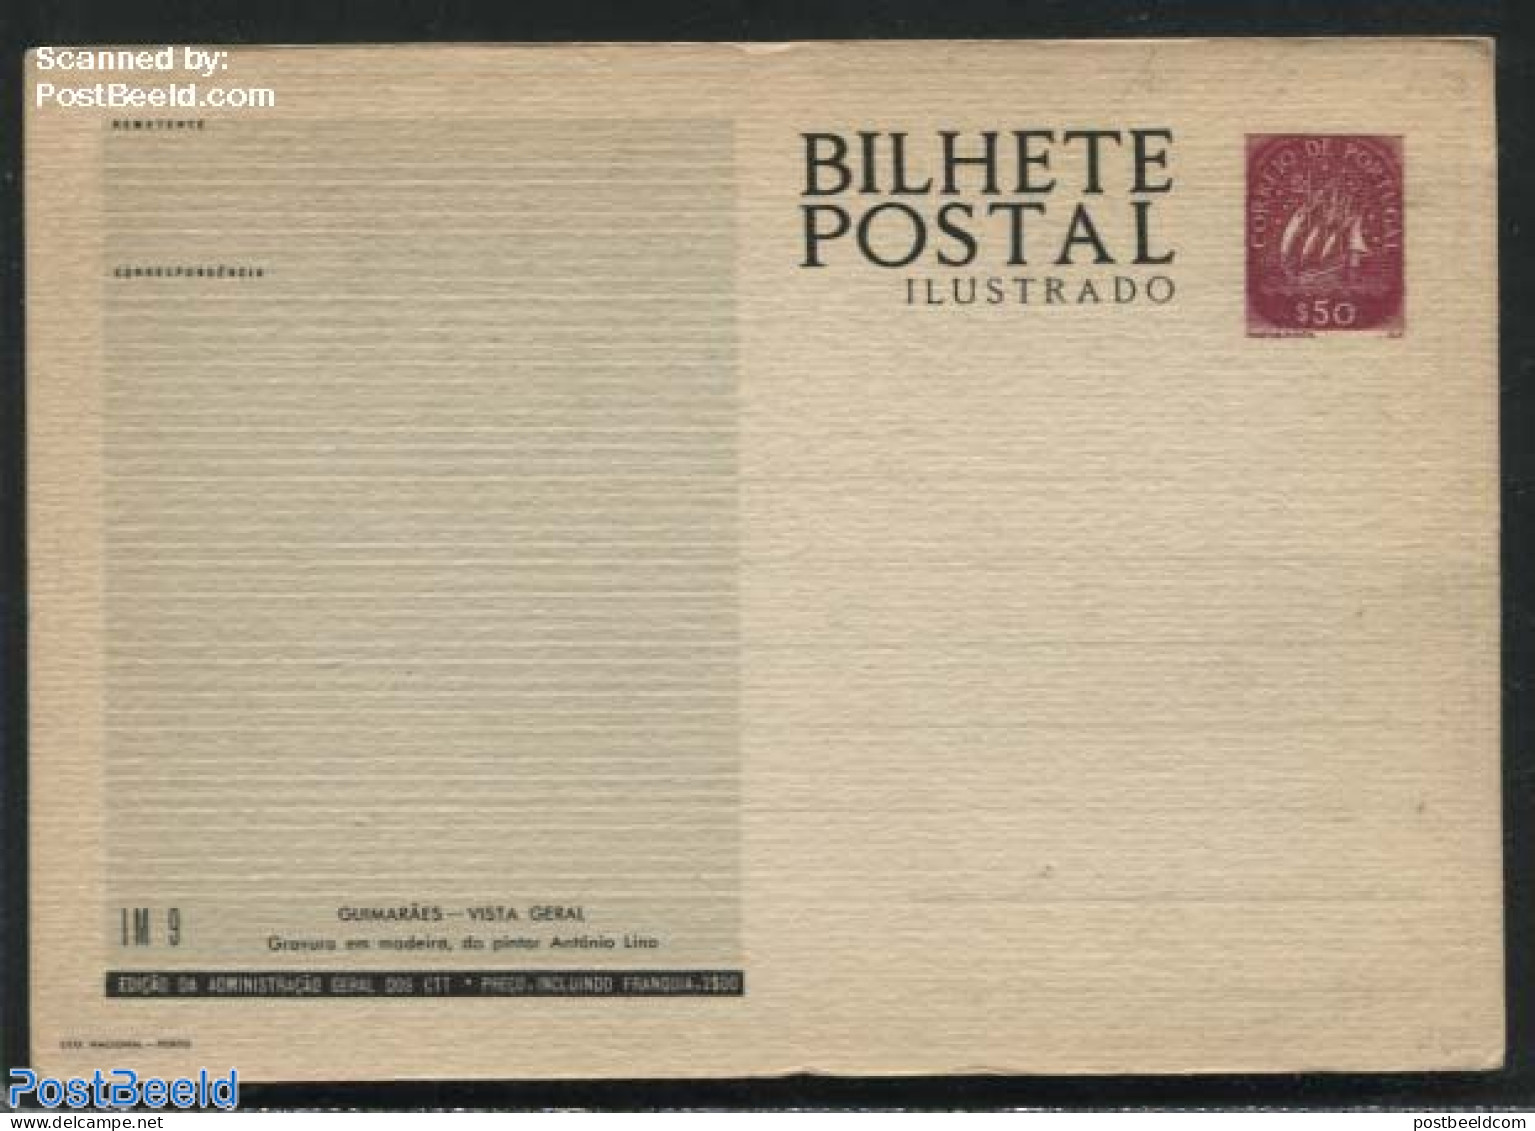 Portugal 1953 Illustrated Postcard IM9, Unused Postal Stationary - Covers & Documents